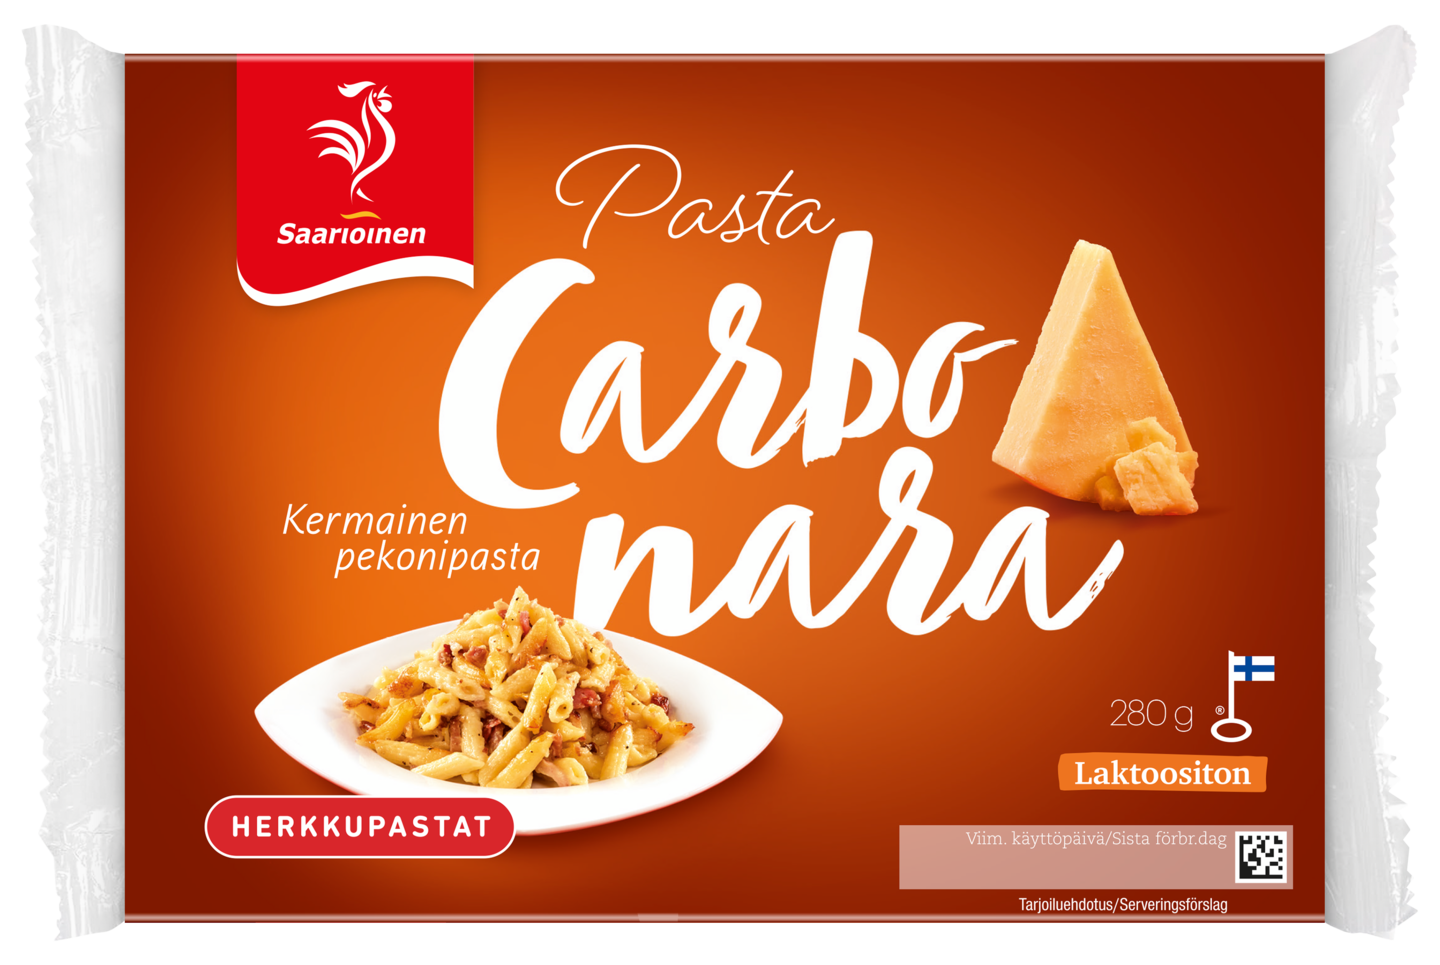 Saarioinen pasta carbonara 280g | K-Ruoka Verkkokauppa